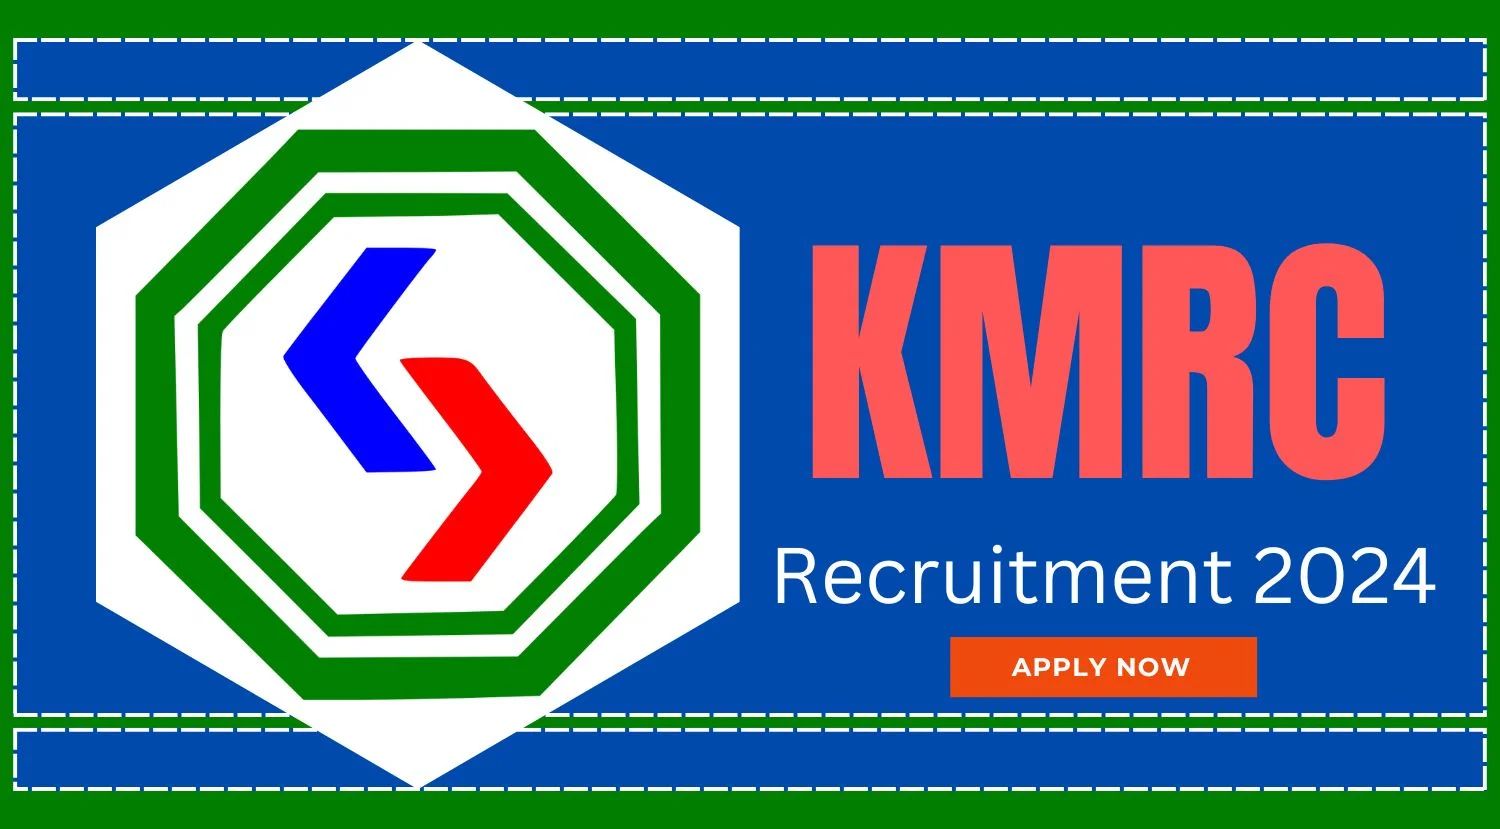 KMRC Recruitment 2024